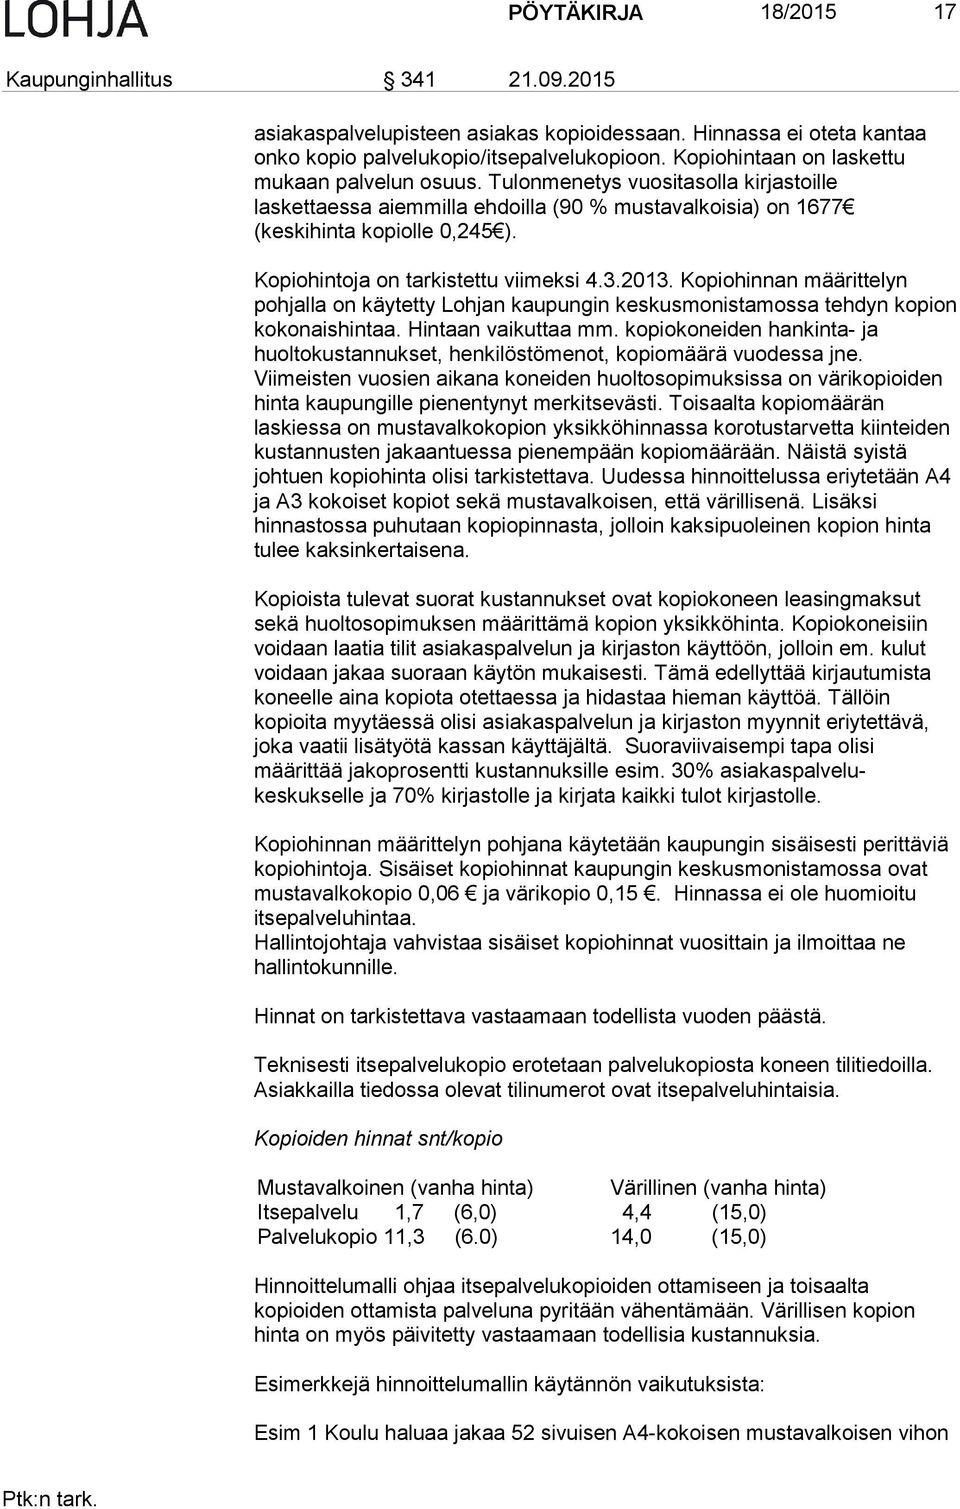 Kopiohintoja on tarkistettu viimeksi 4.3.2013. Kopiohinnan määrittelyn pohjalla on käytetty Lohjan kaupungin keskusmonistamossa tehdyn kopion kokonaishintaa. Hintaan vaikuttaa mm.